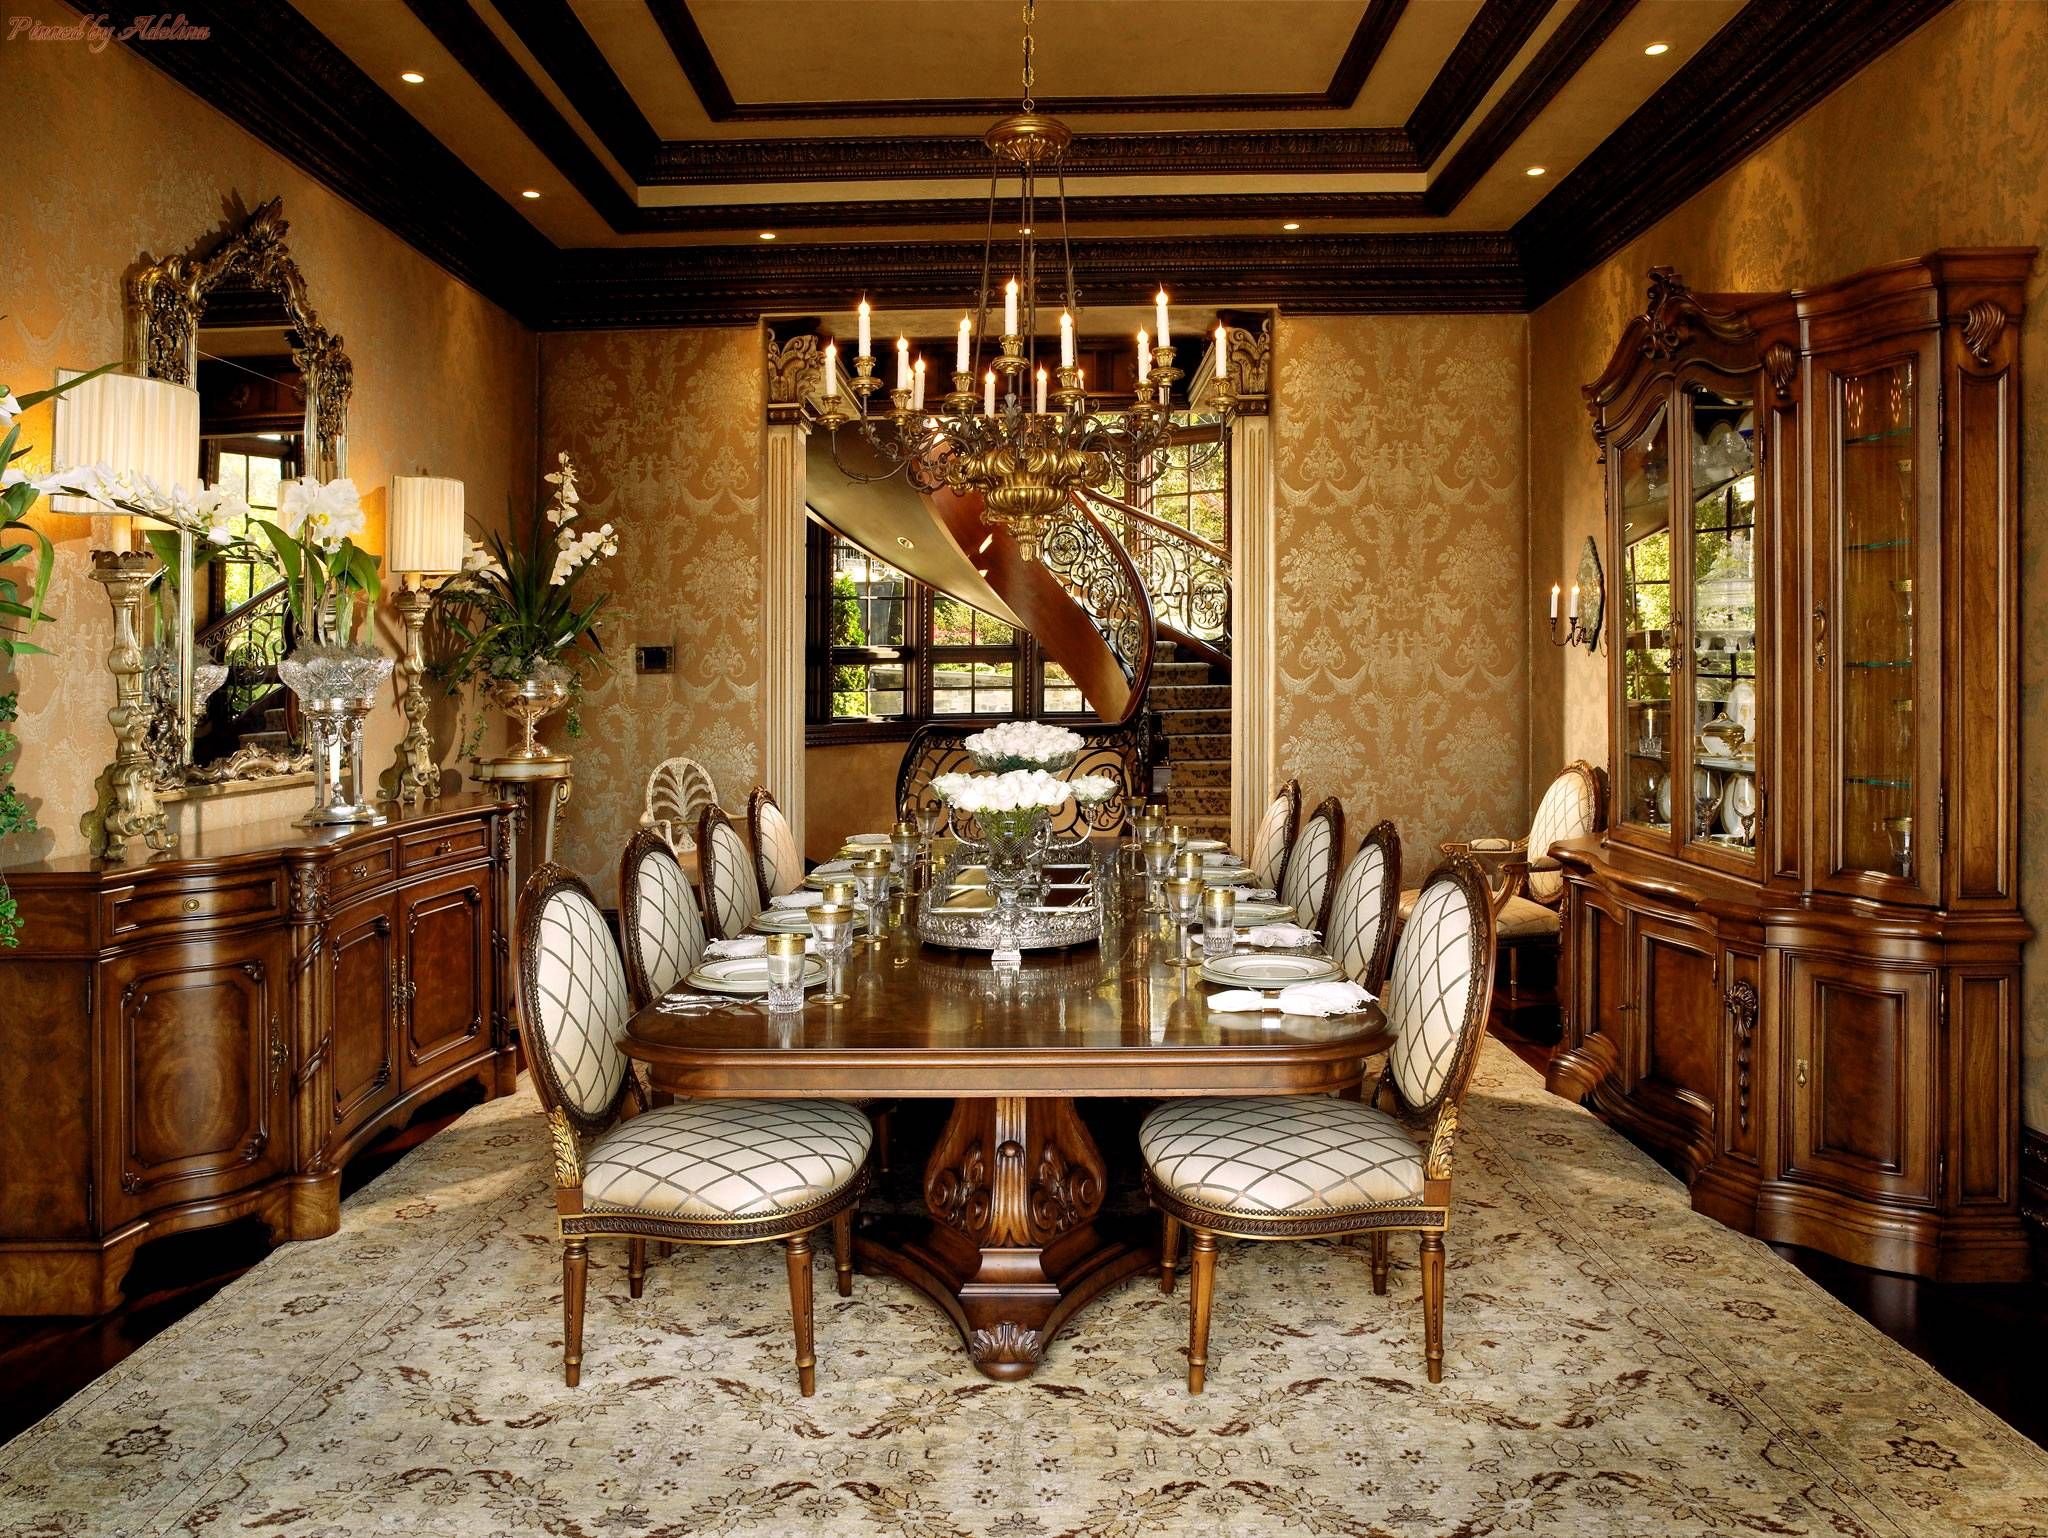 Elegant Dining Room Furniture For Formal Gatherings